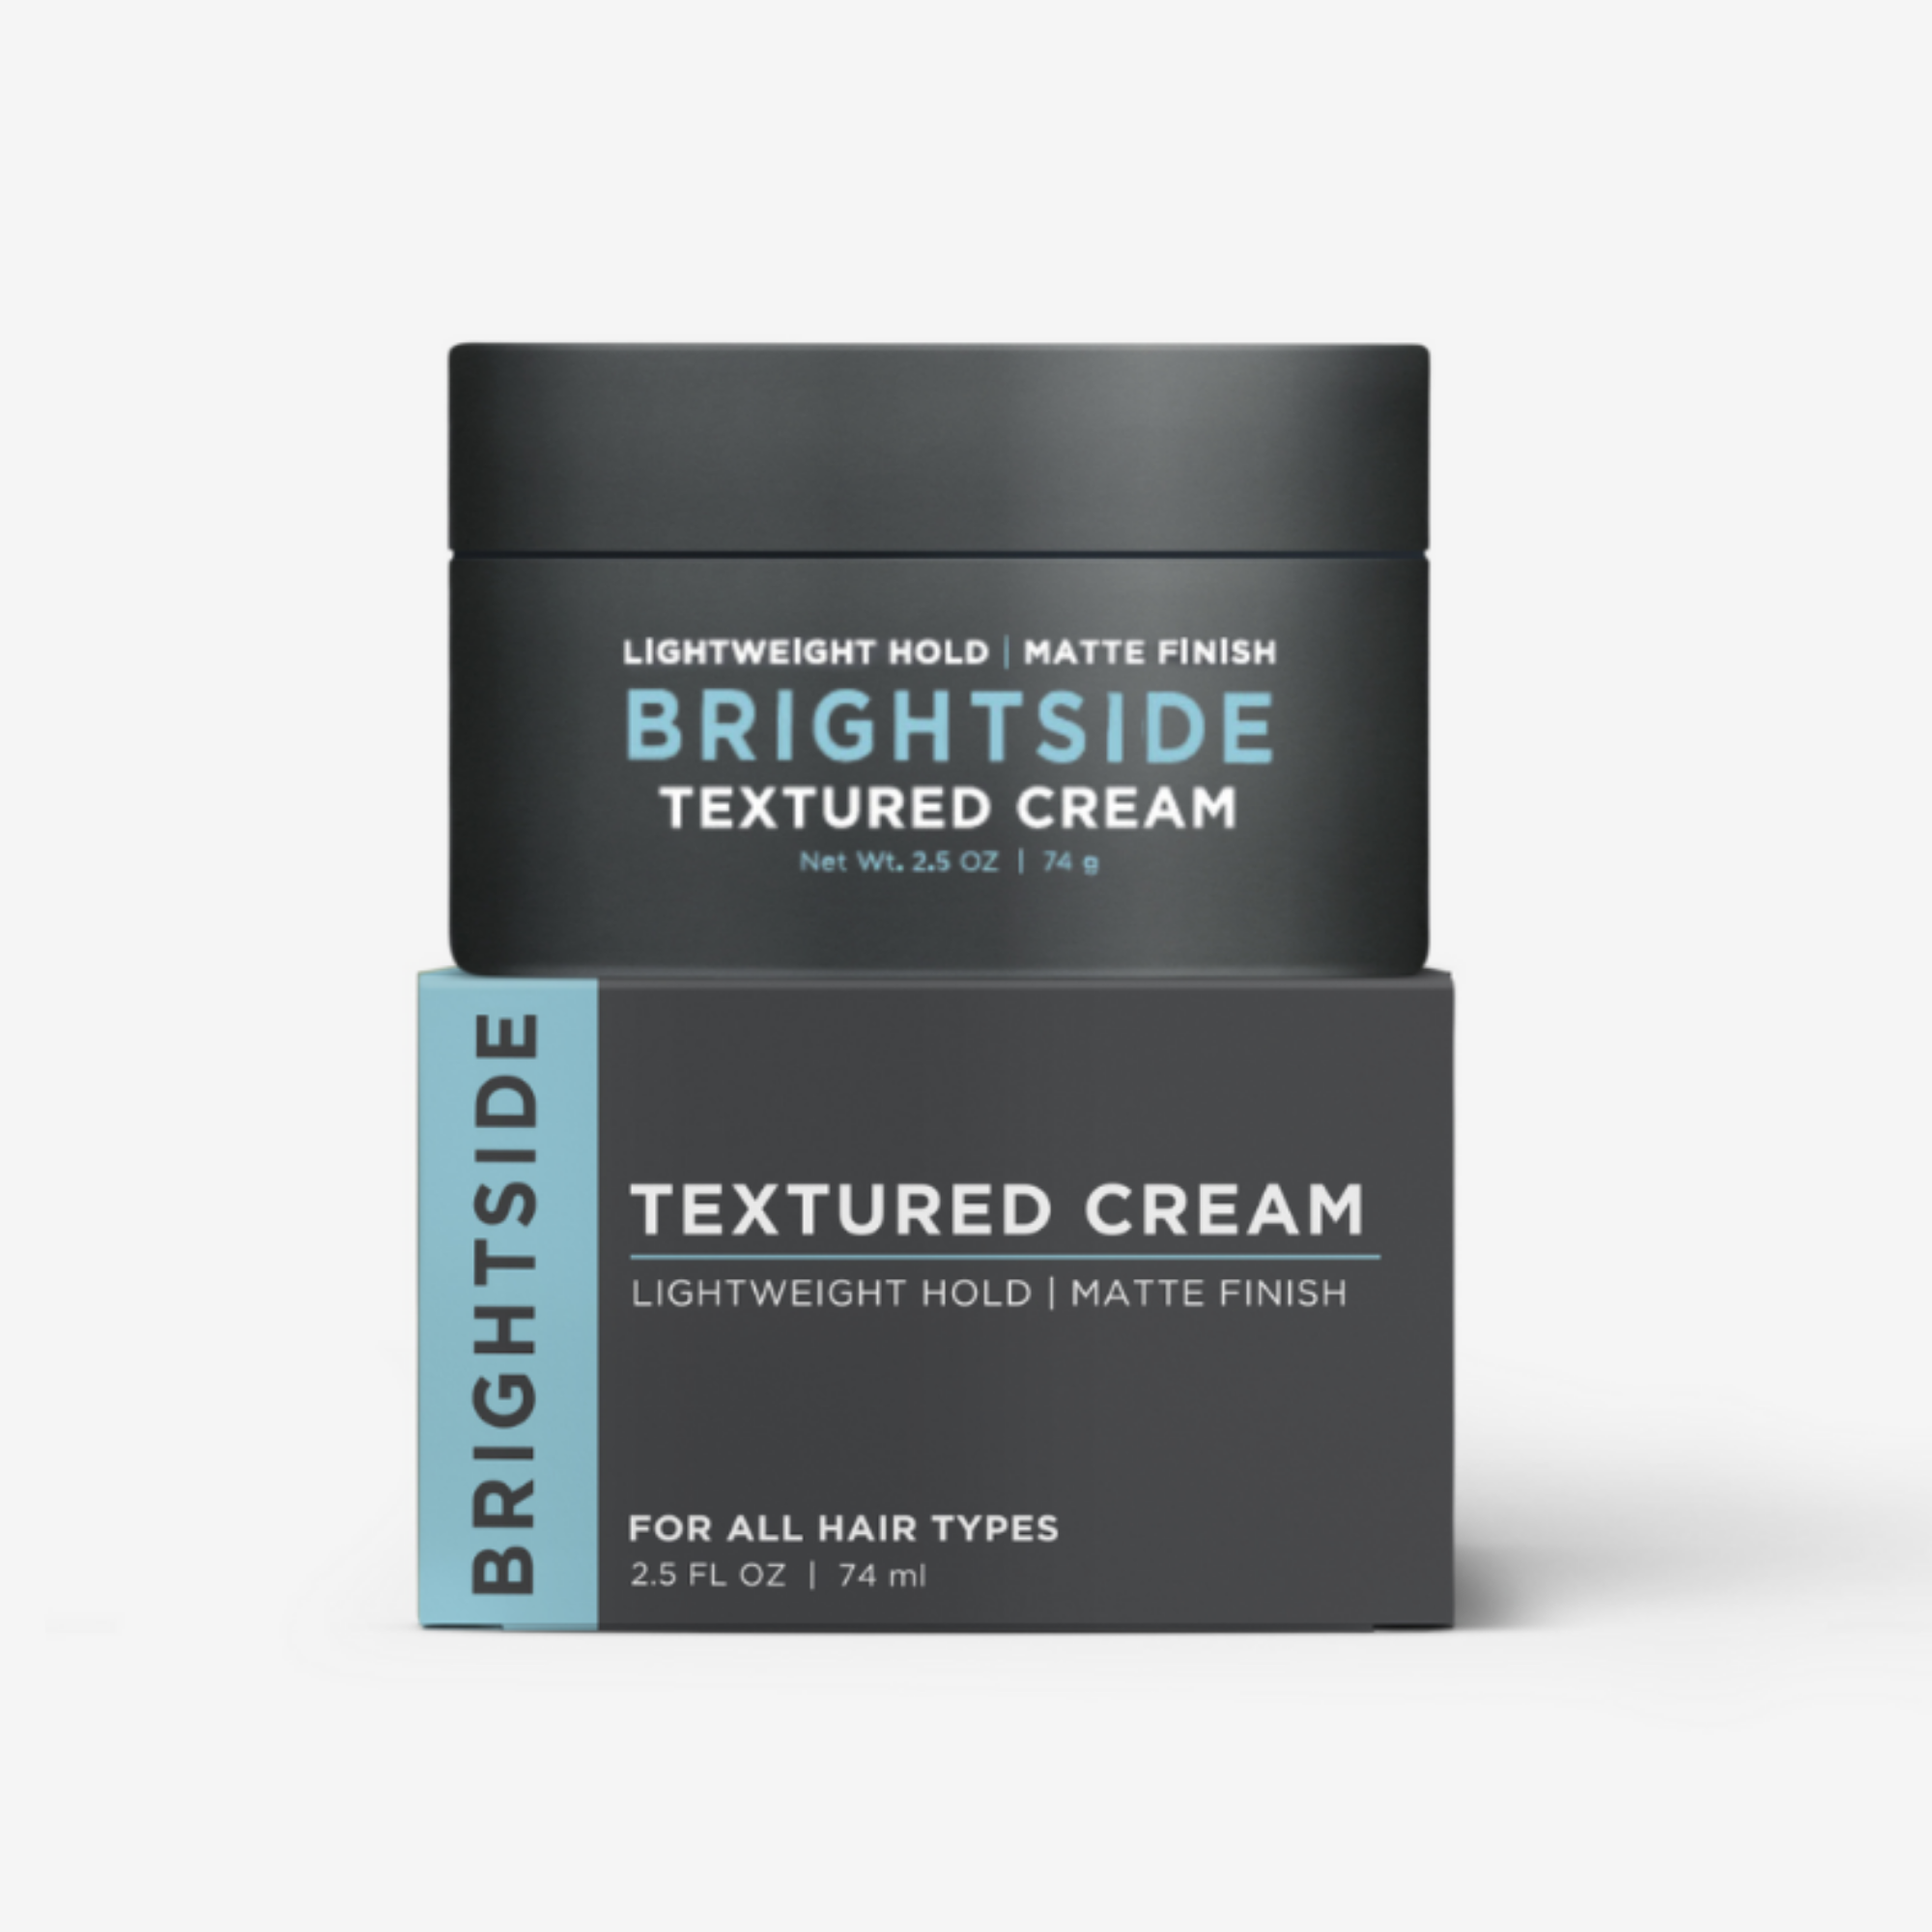 Brightside Textured Cream 2.5oz